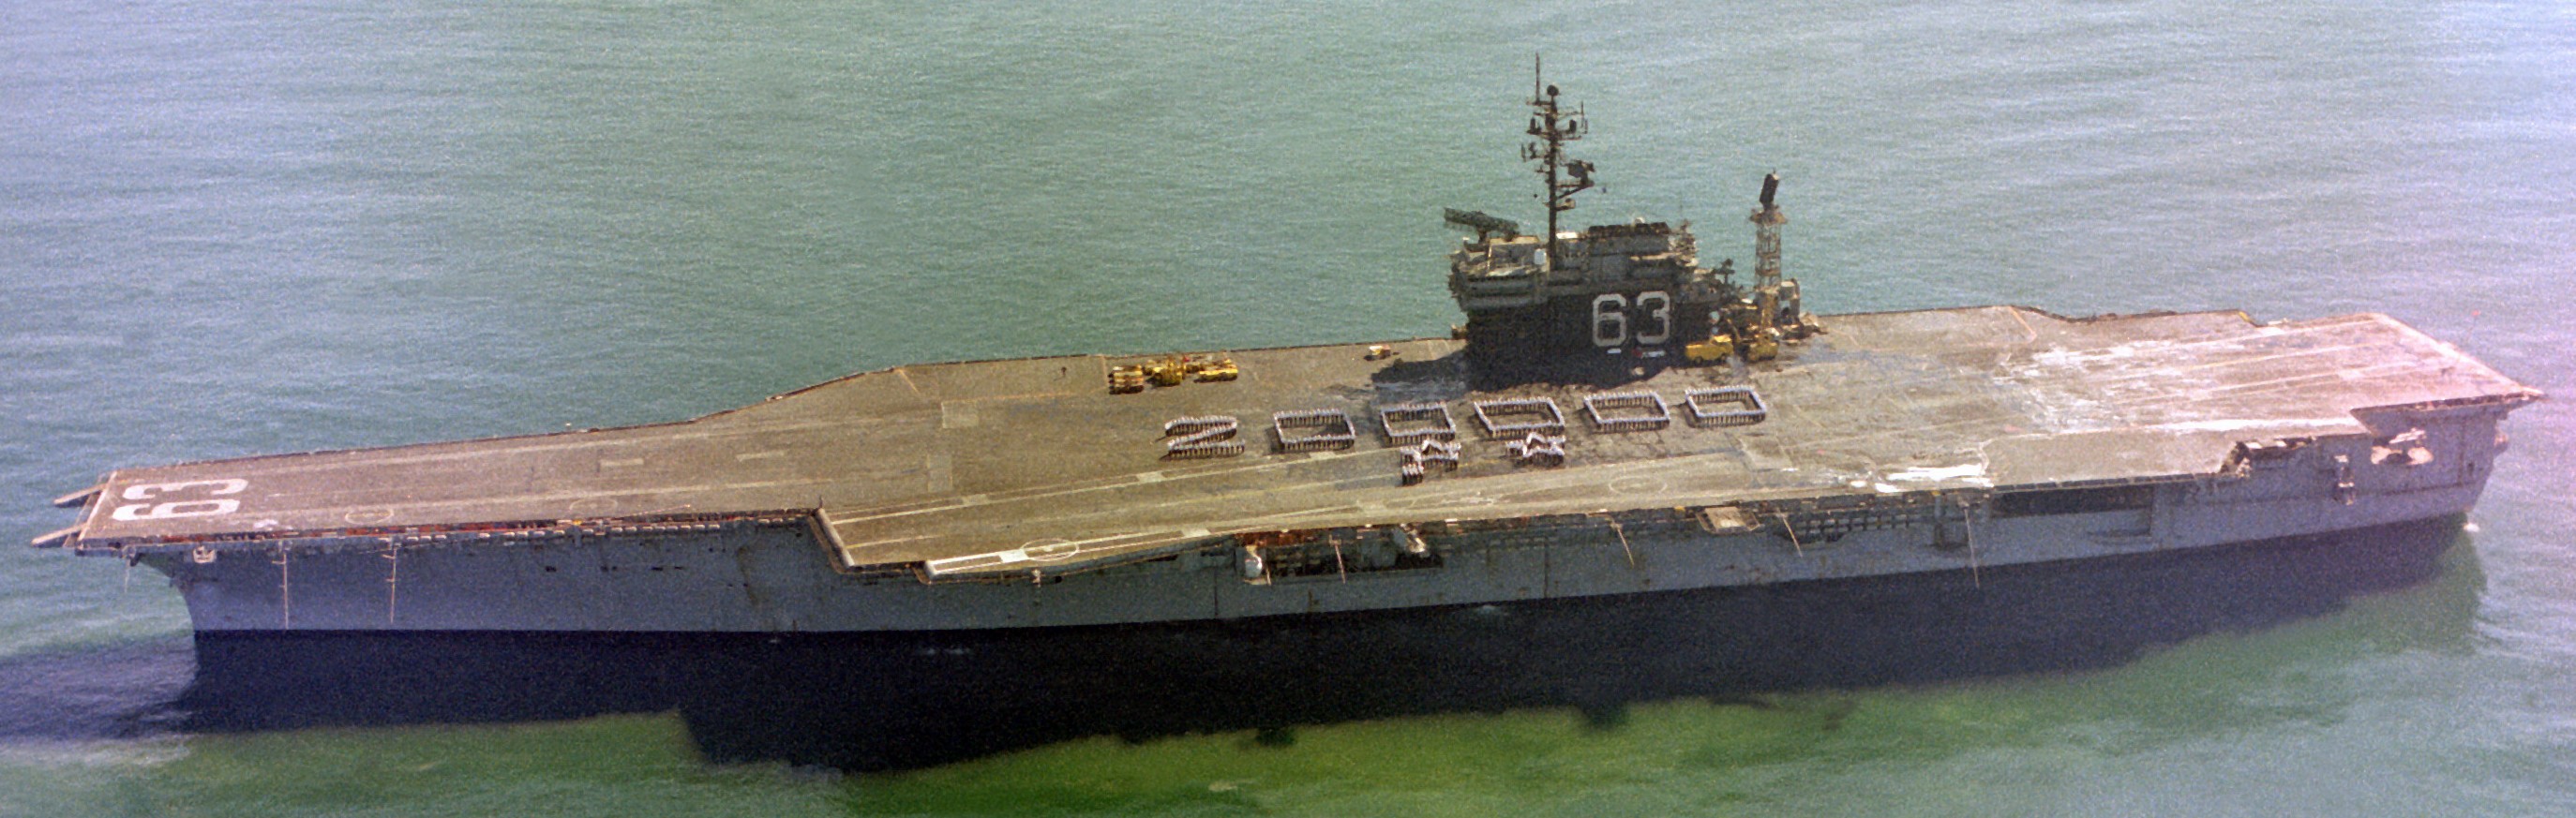 cv-63 uss kitty hawk aircraft carrier 313